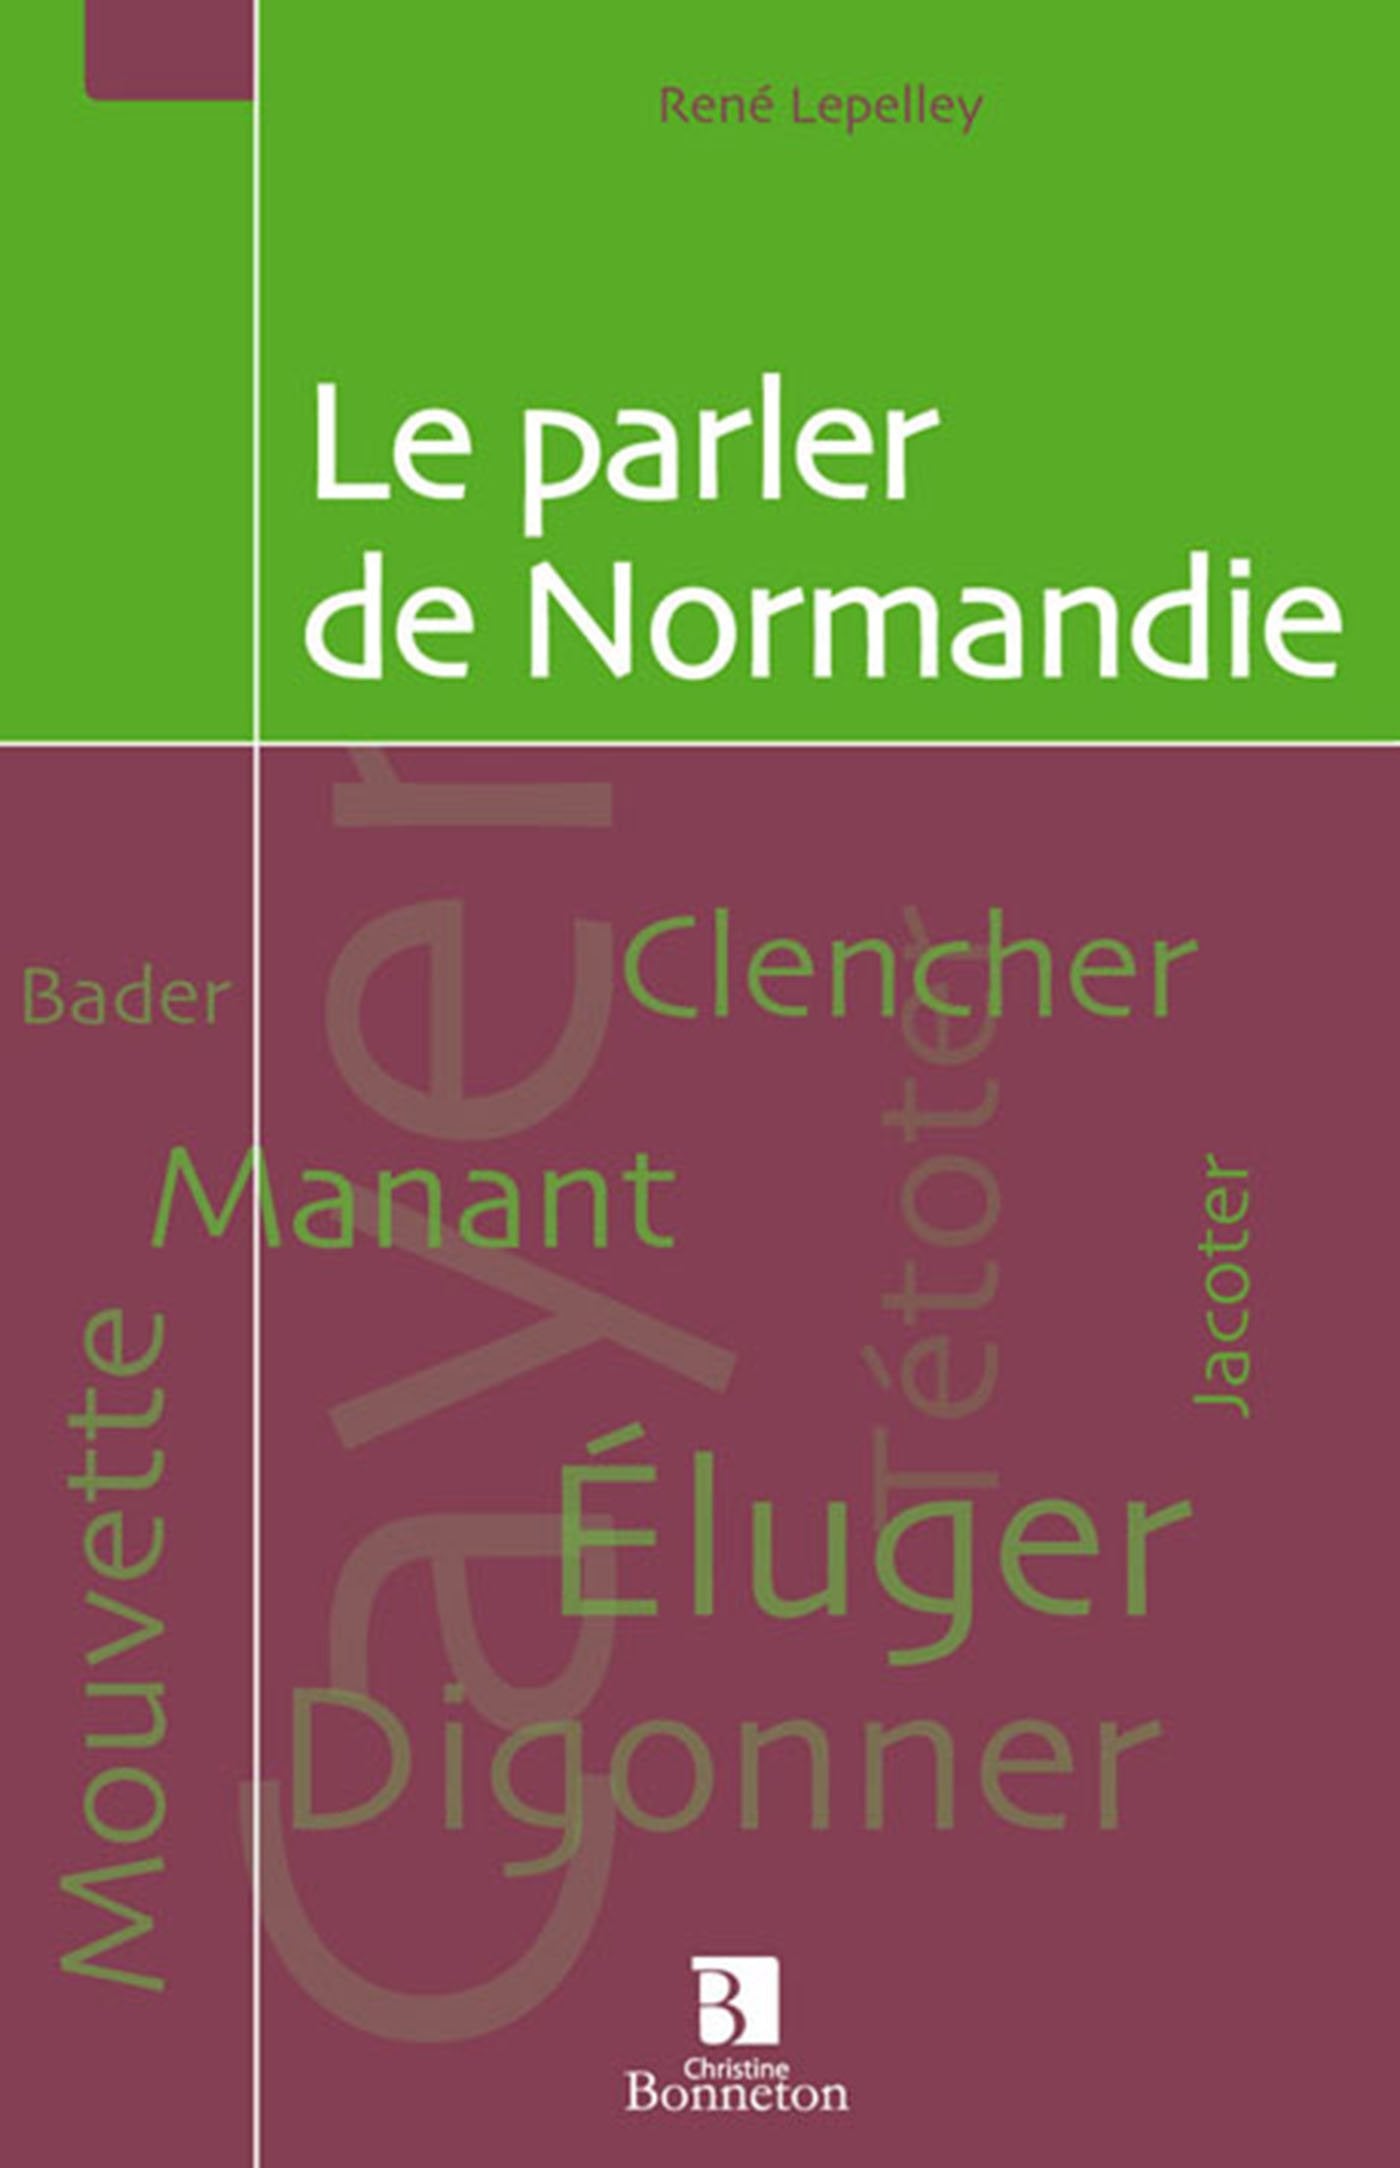 Livre ISBN 2862534242 Le parler de Normandie (René Lepelley)